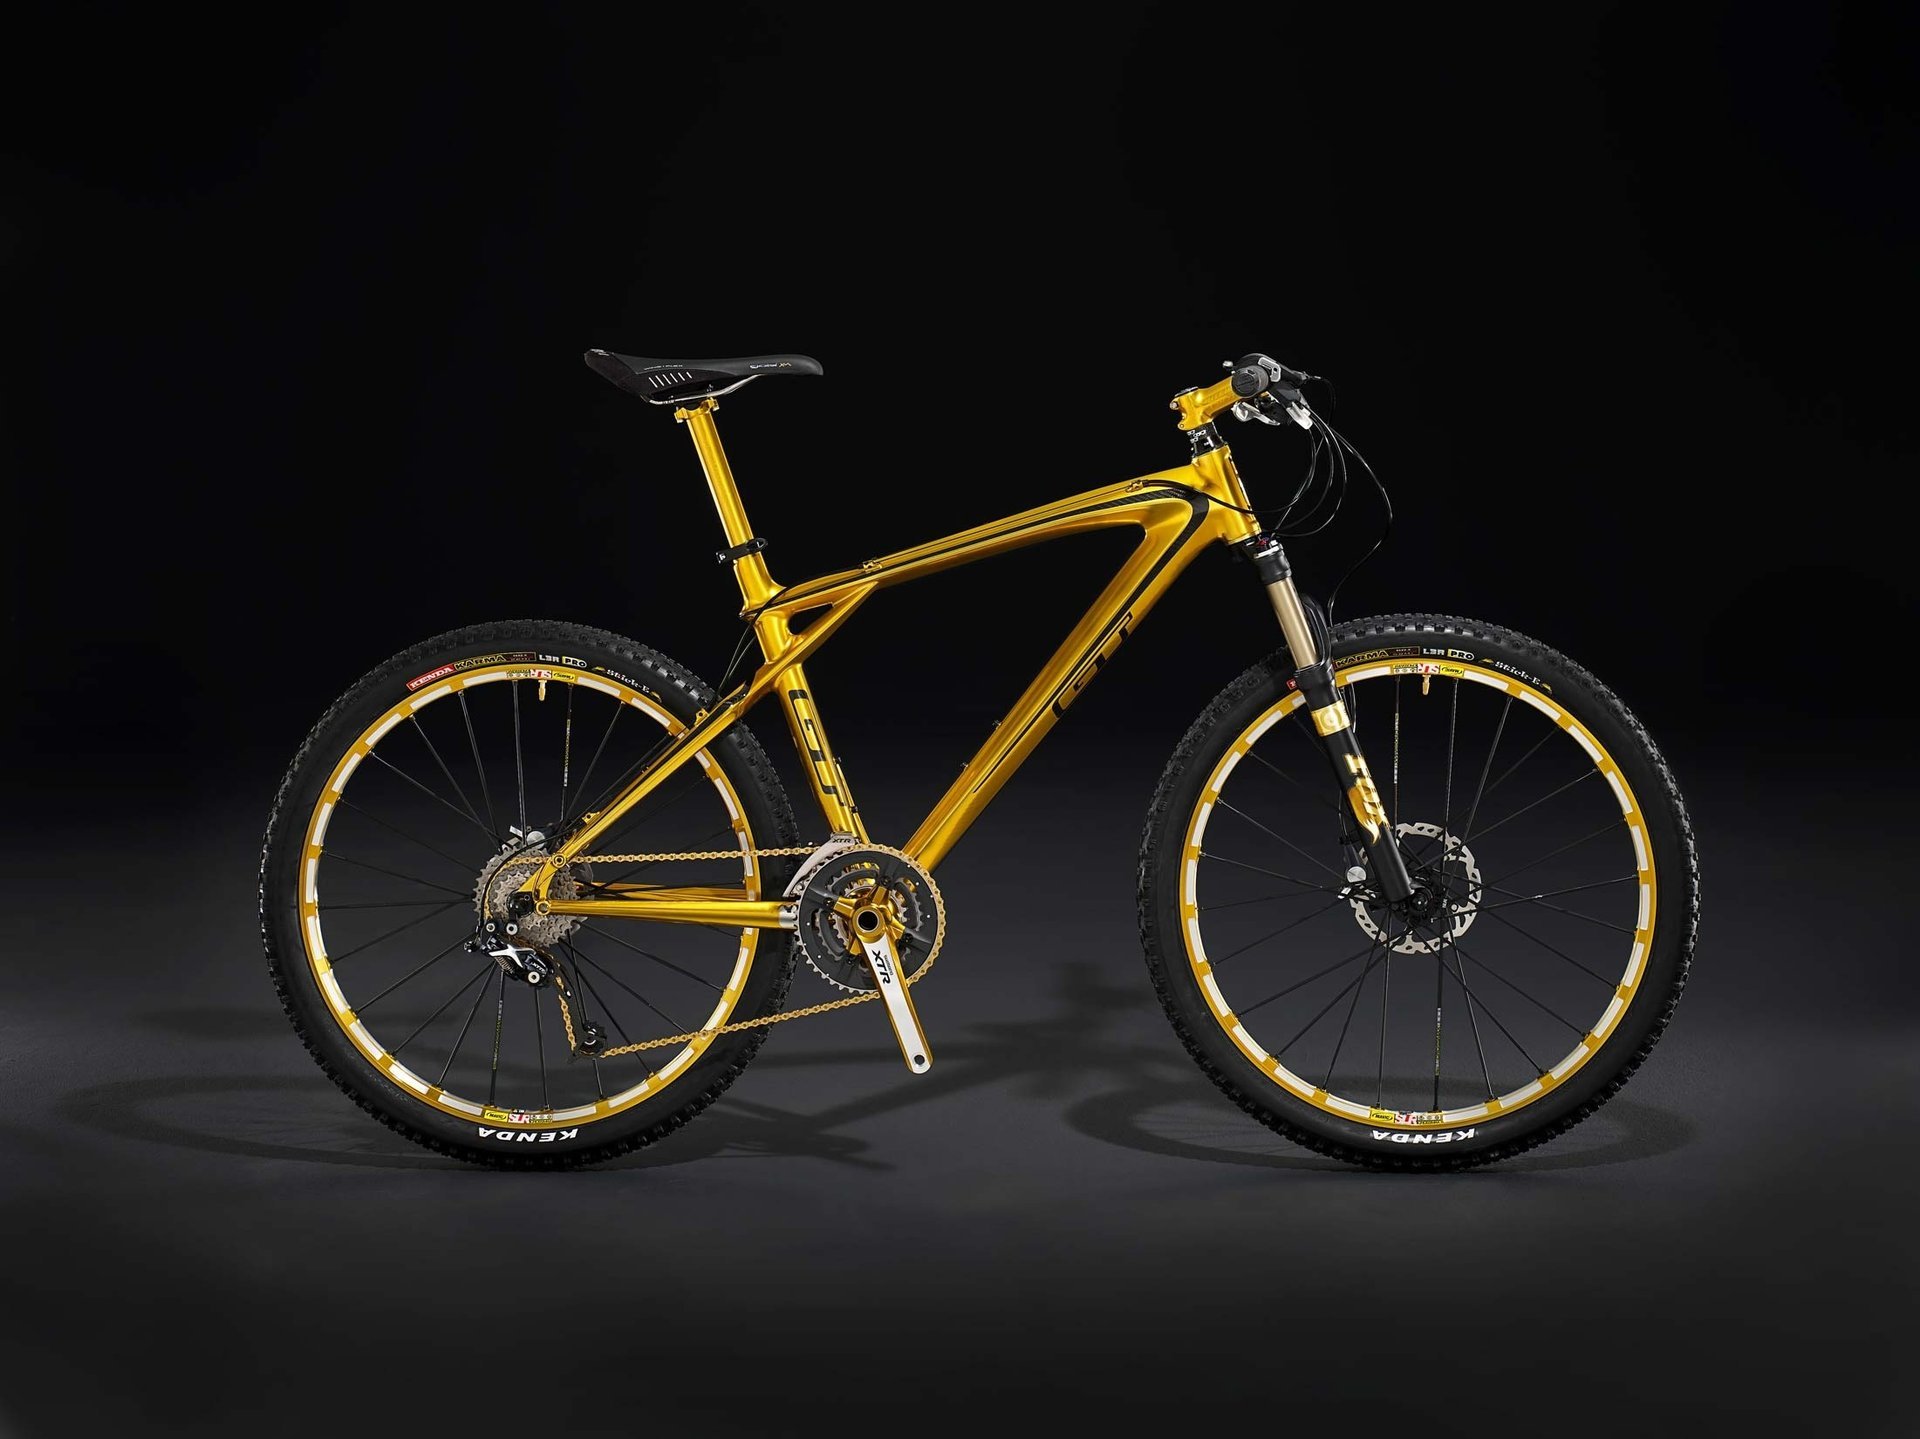 Желтый gt велосипед на черном фоне